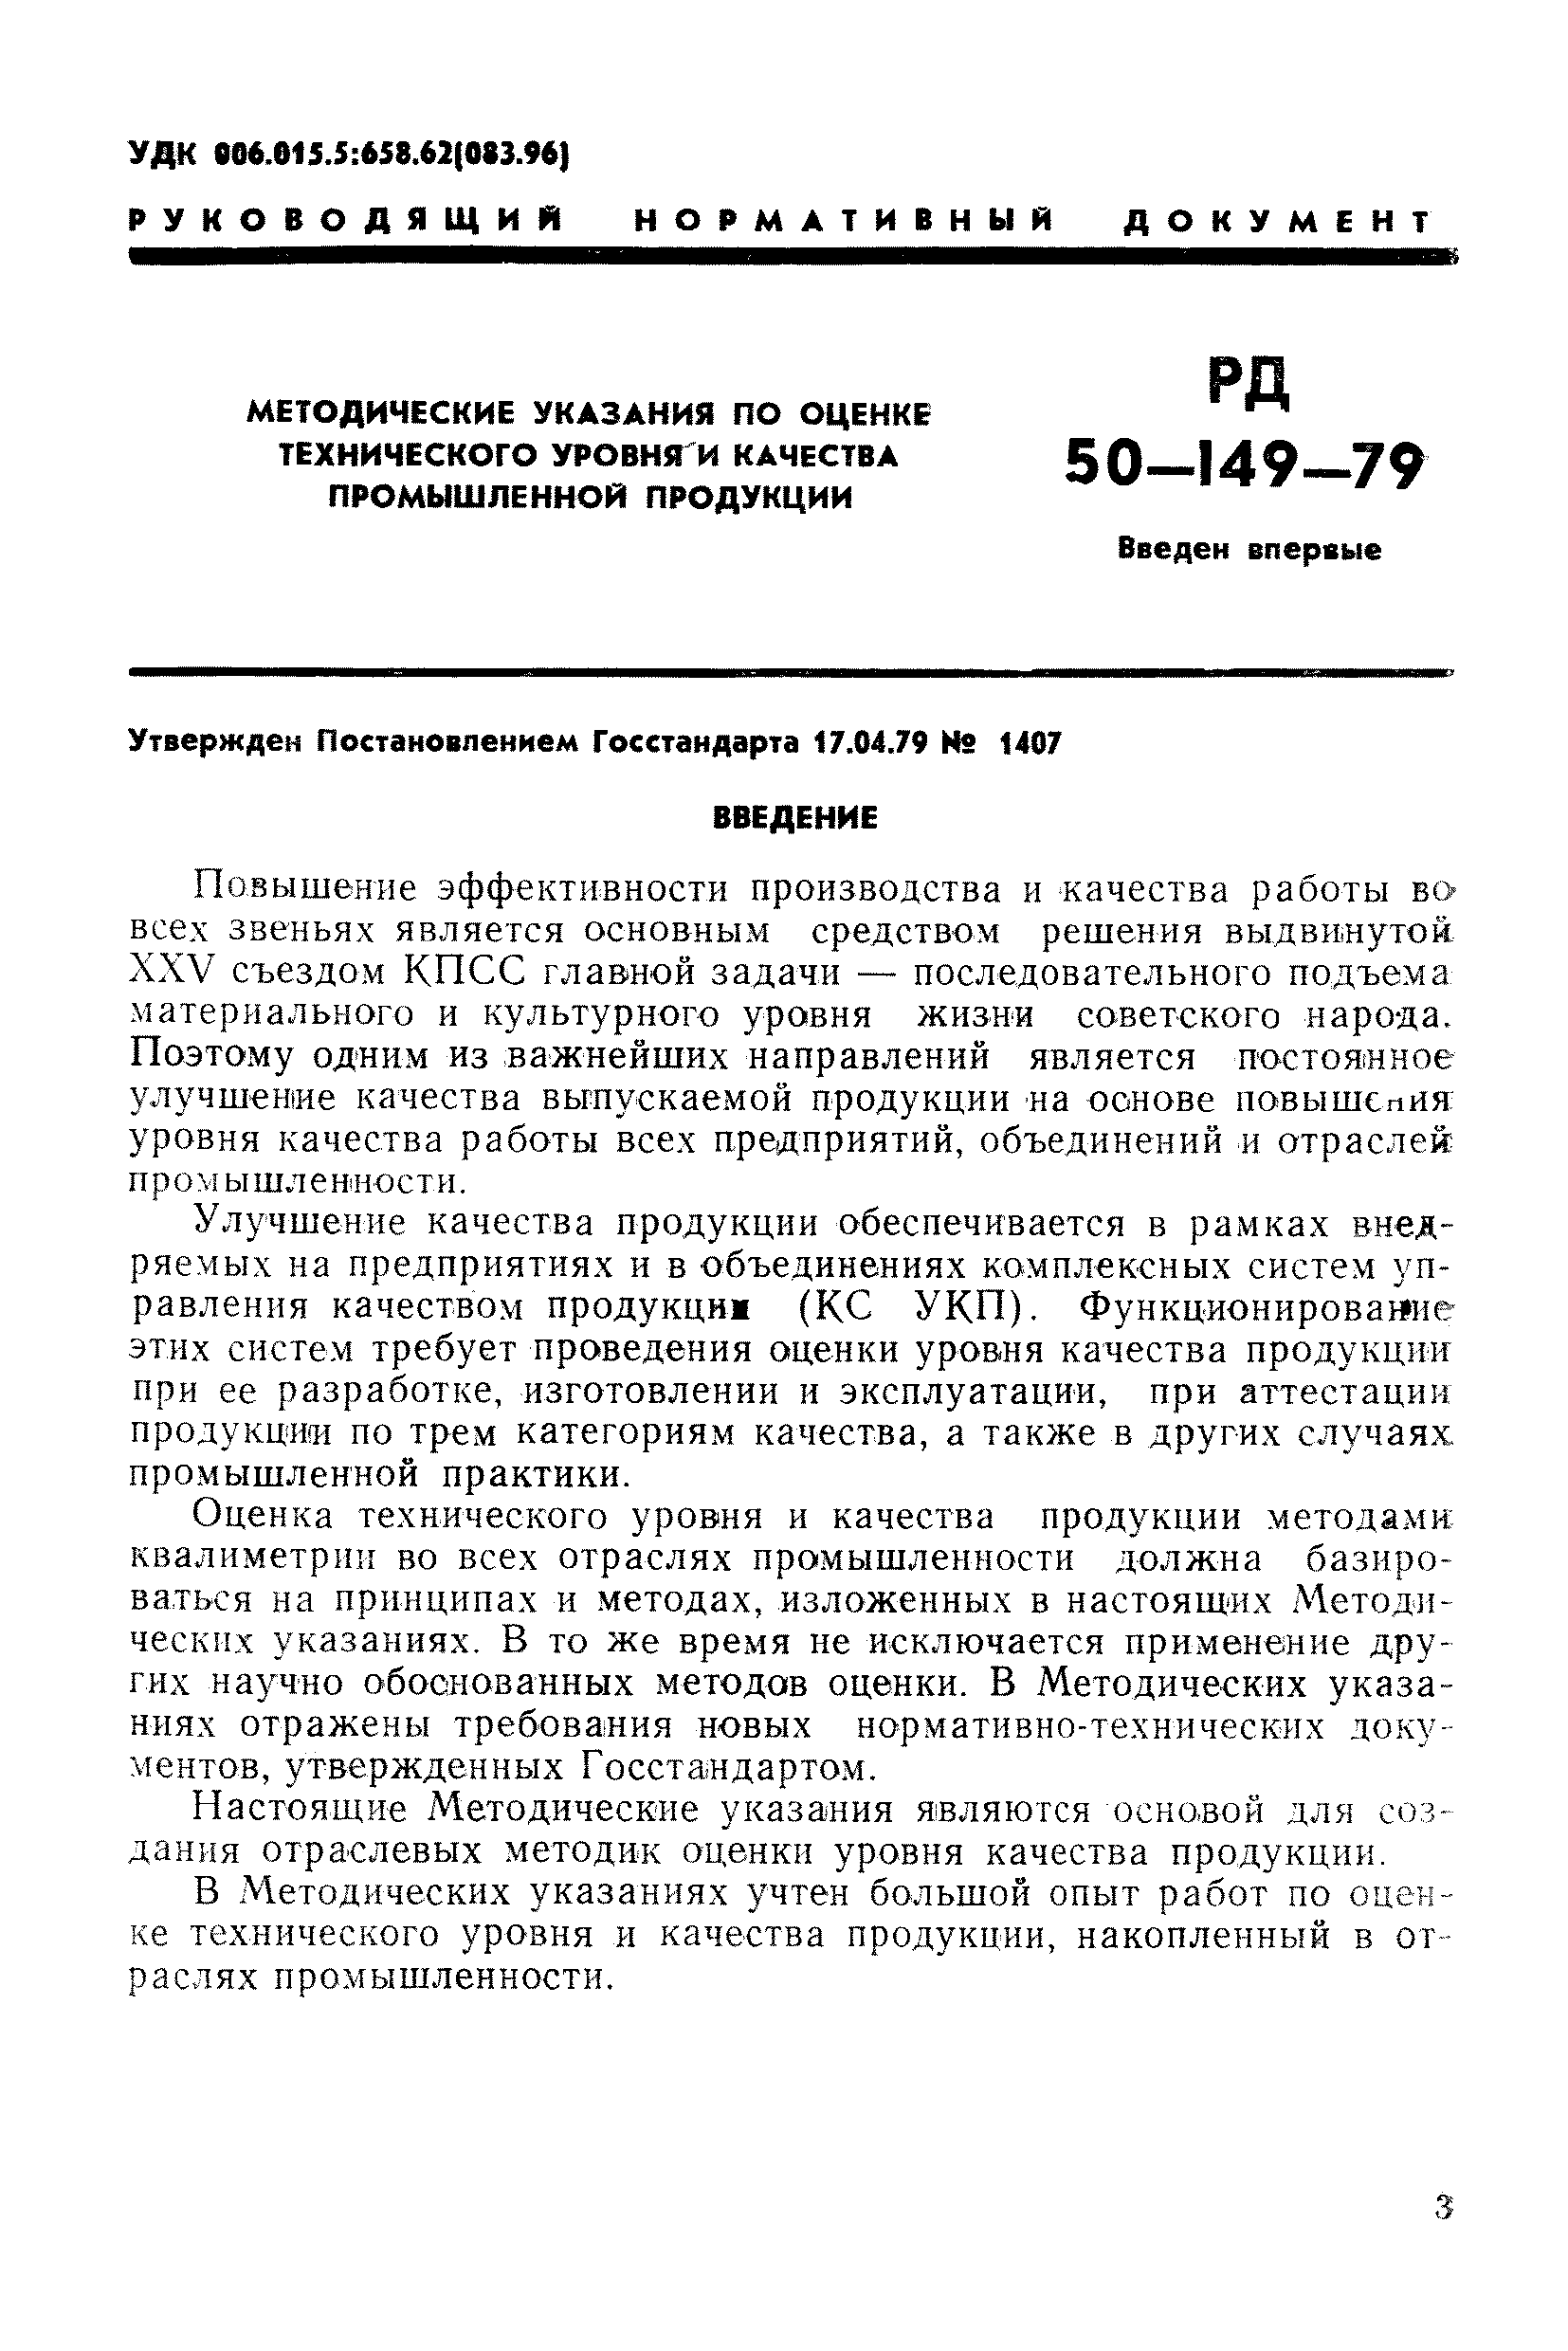 РД 50-149-79